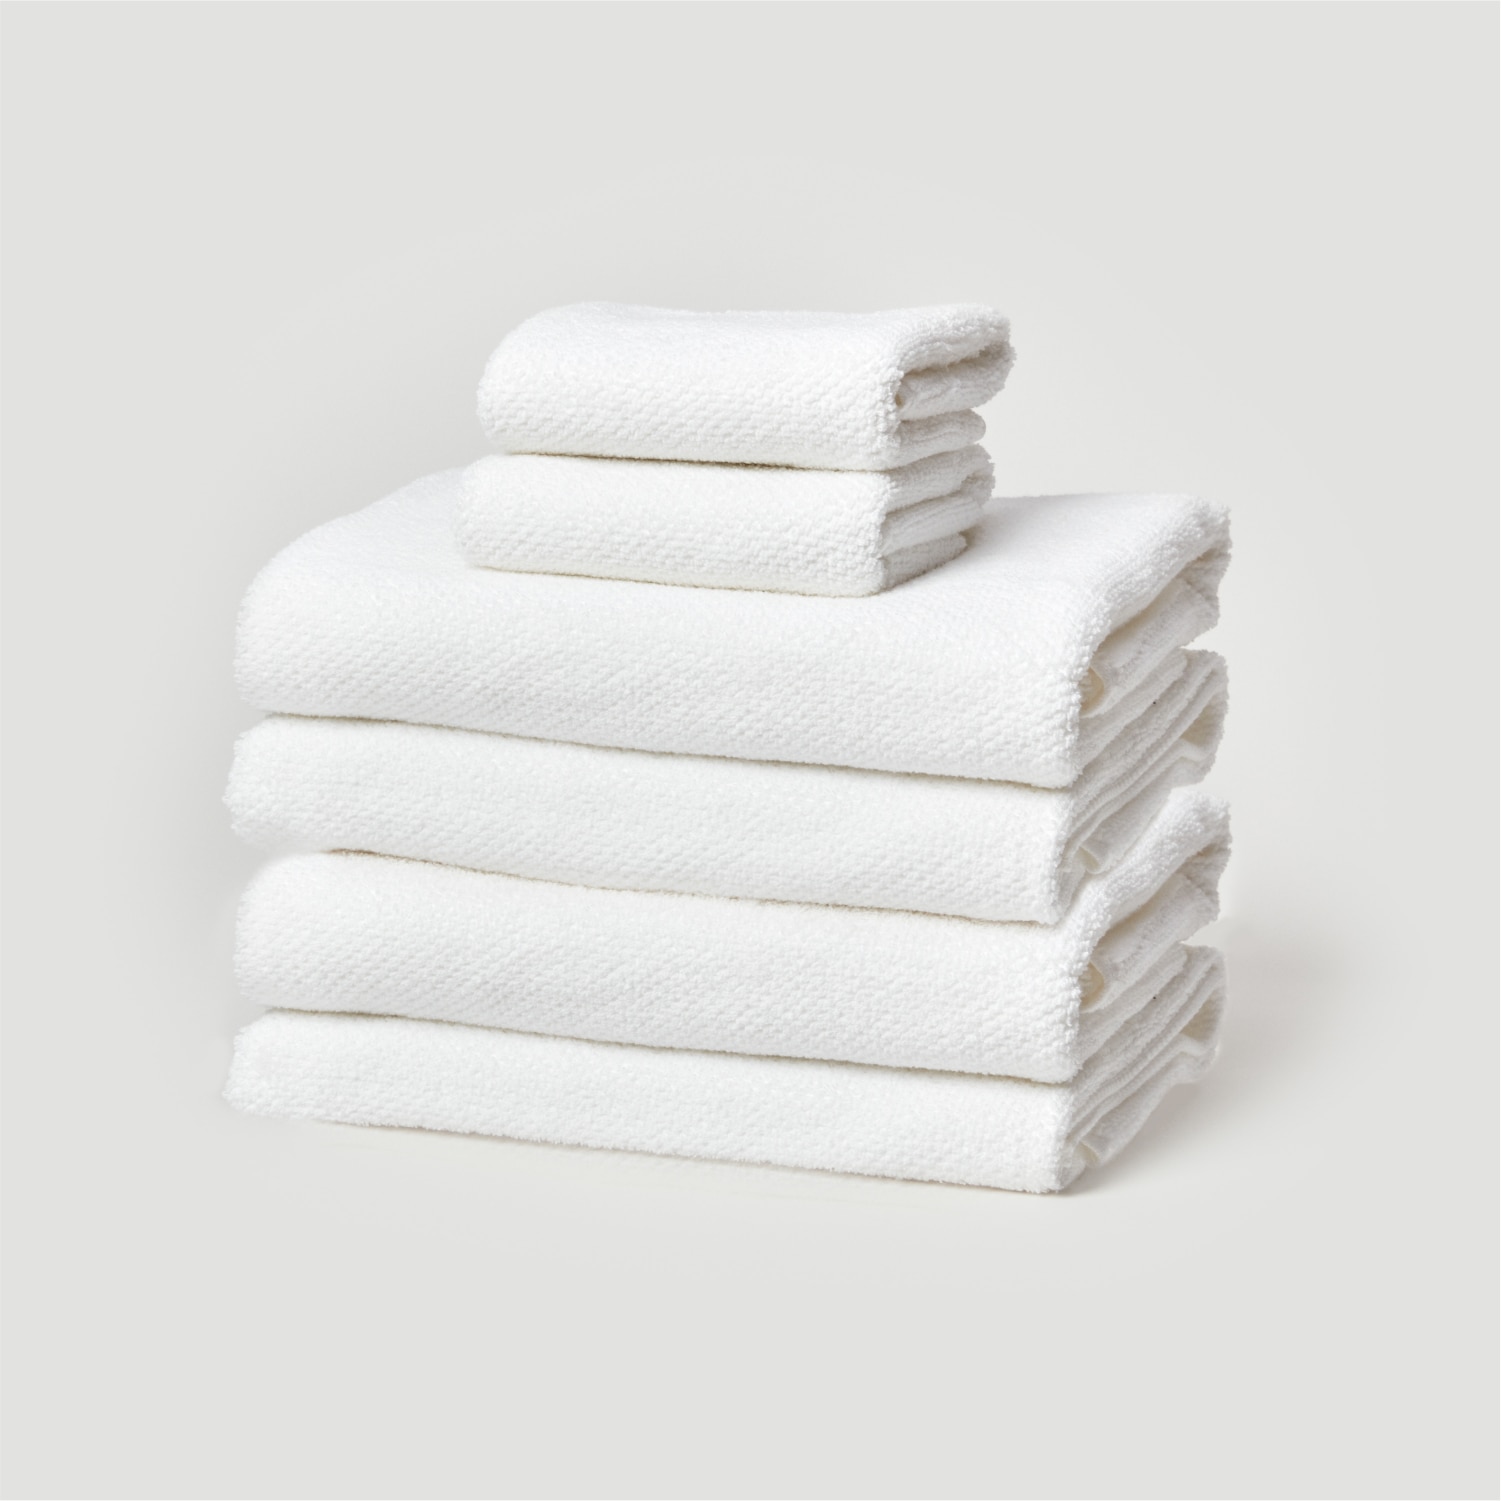 Dormify 6 Piece Towel Set